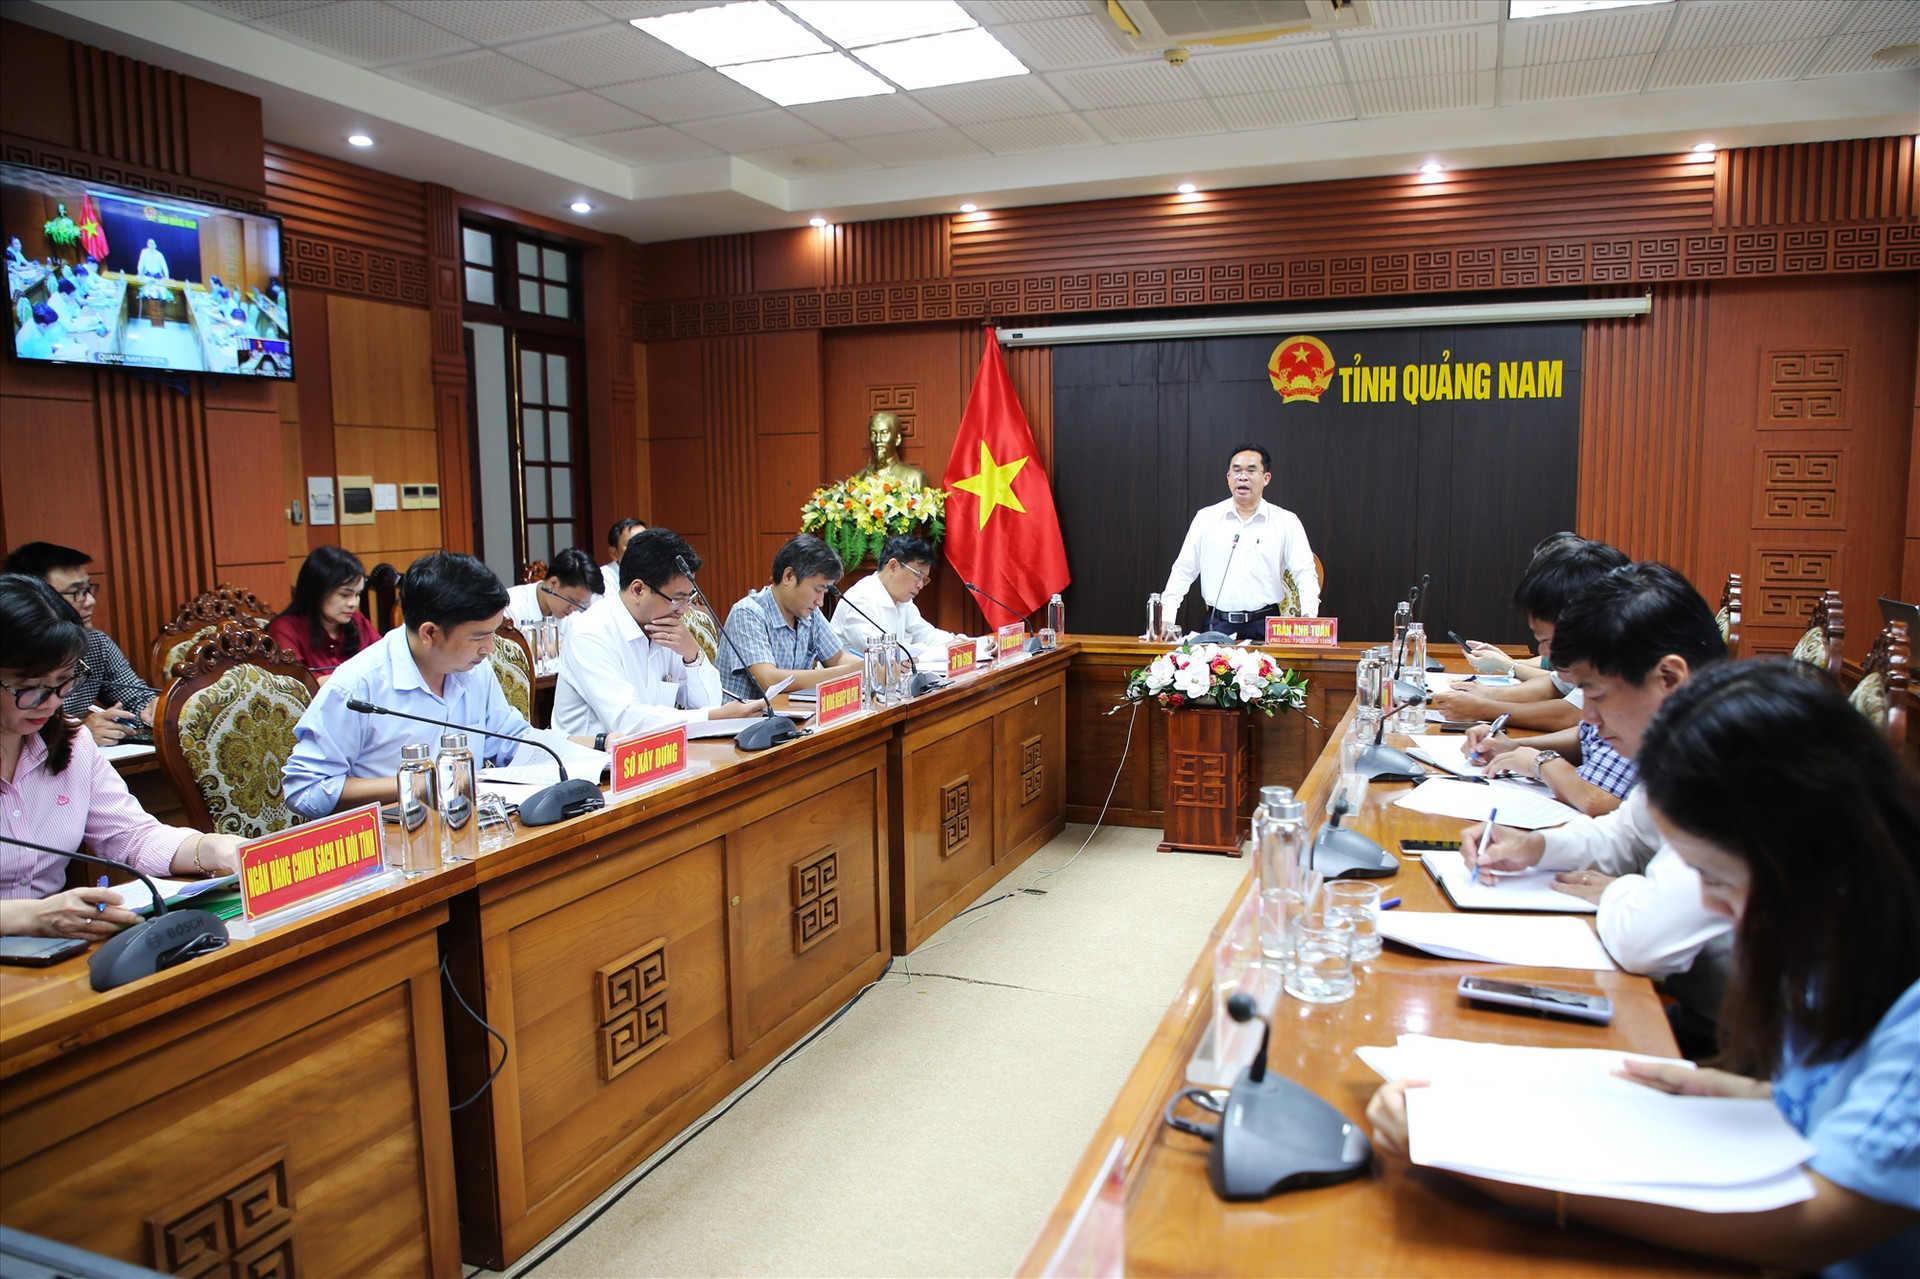 Phó Chủ tịch UBND tỉnh Trần Anh Tuấn chủ trì cuộc họp điểm cầu của tỉnh. Ảnh: A.N